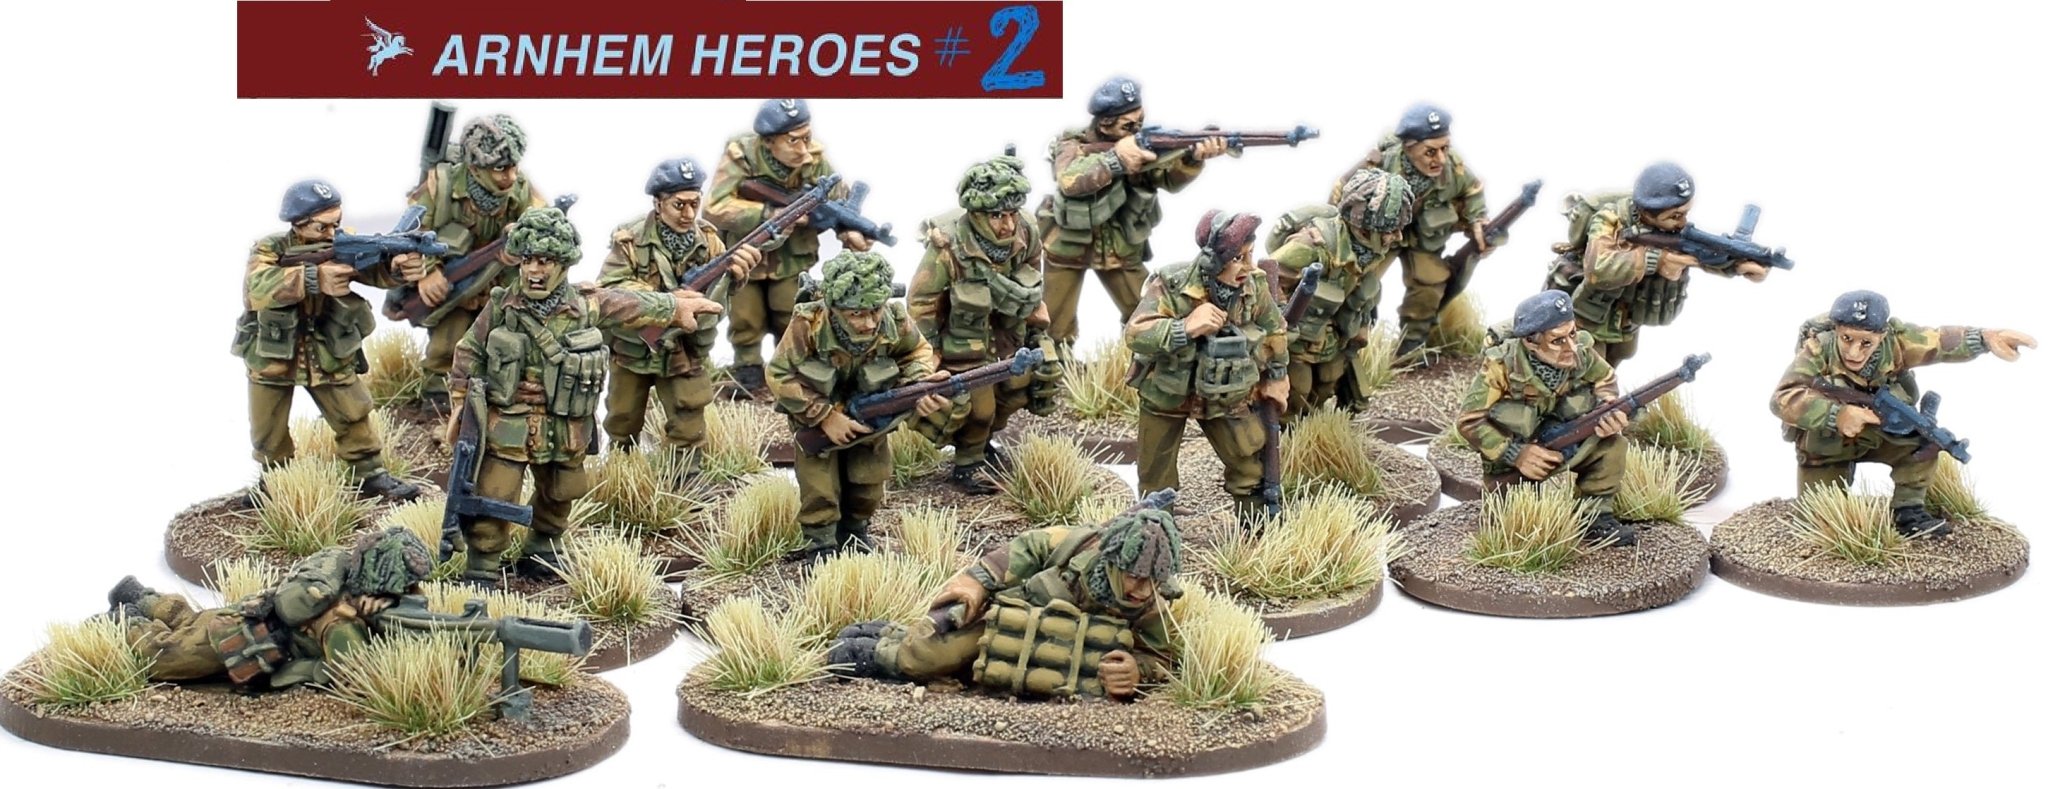 28mm Arnhem Heroes Kickstarter 2